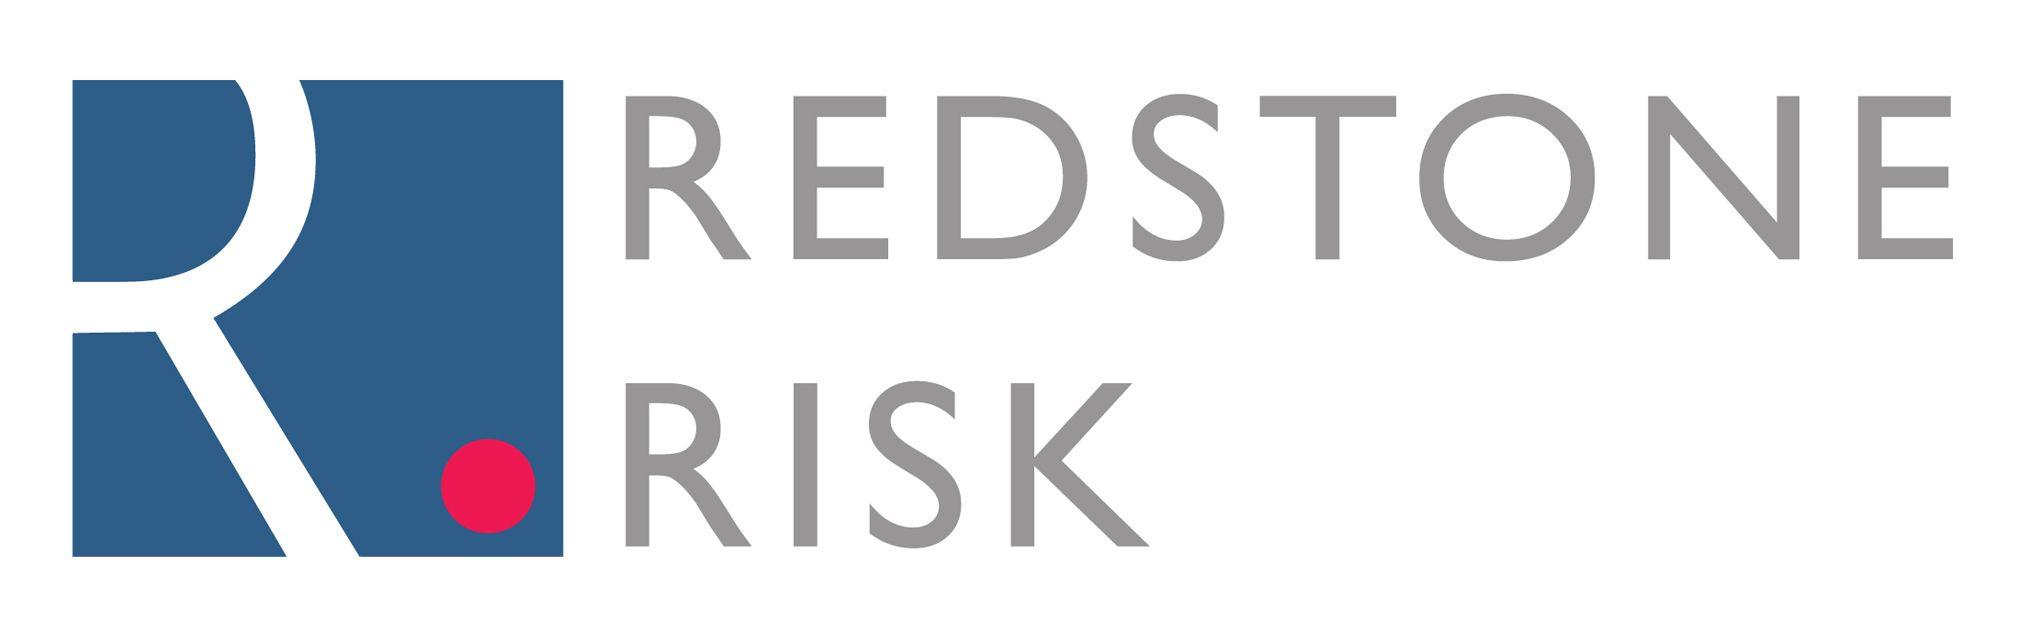 Risk Logo - Home - Redstone Risk